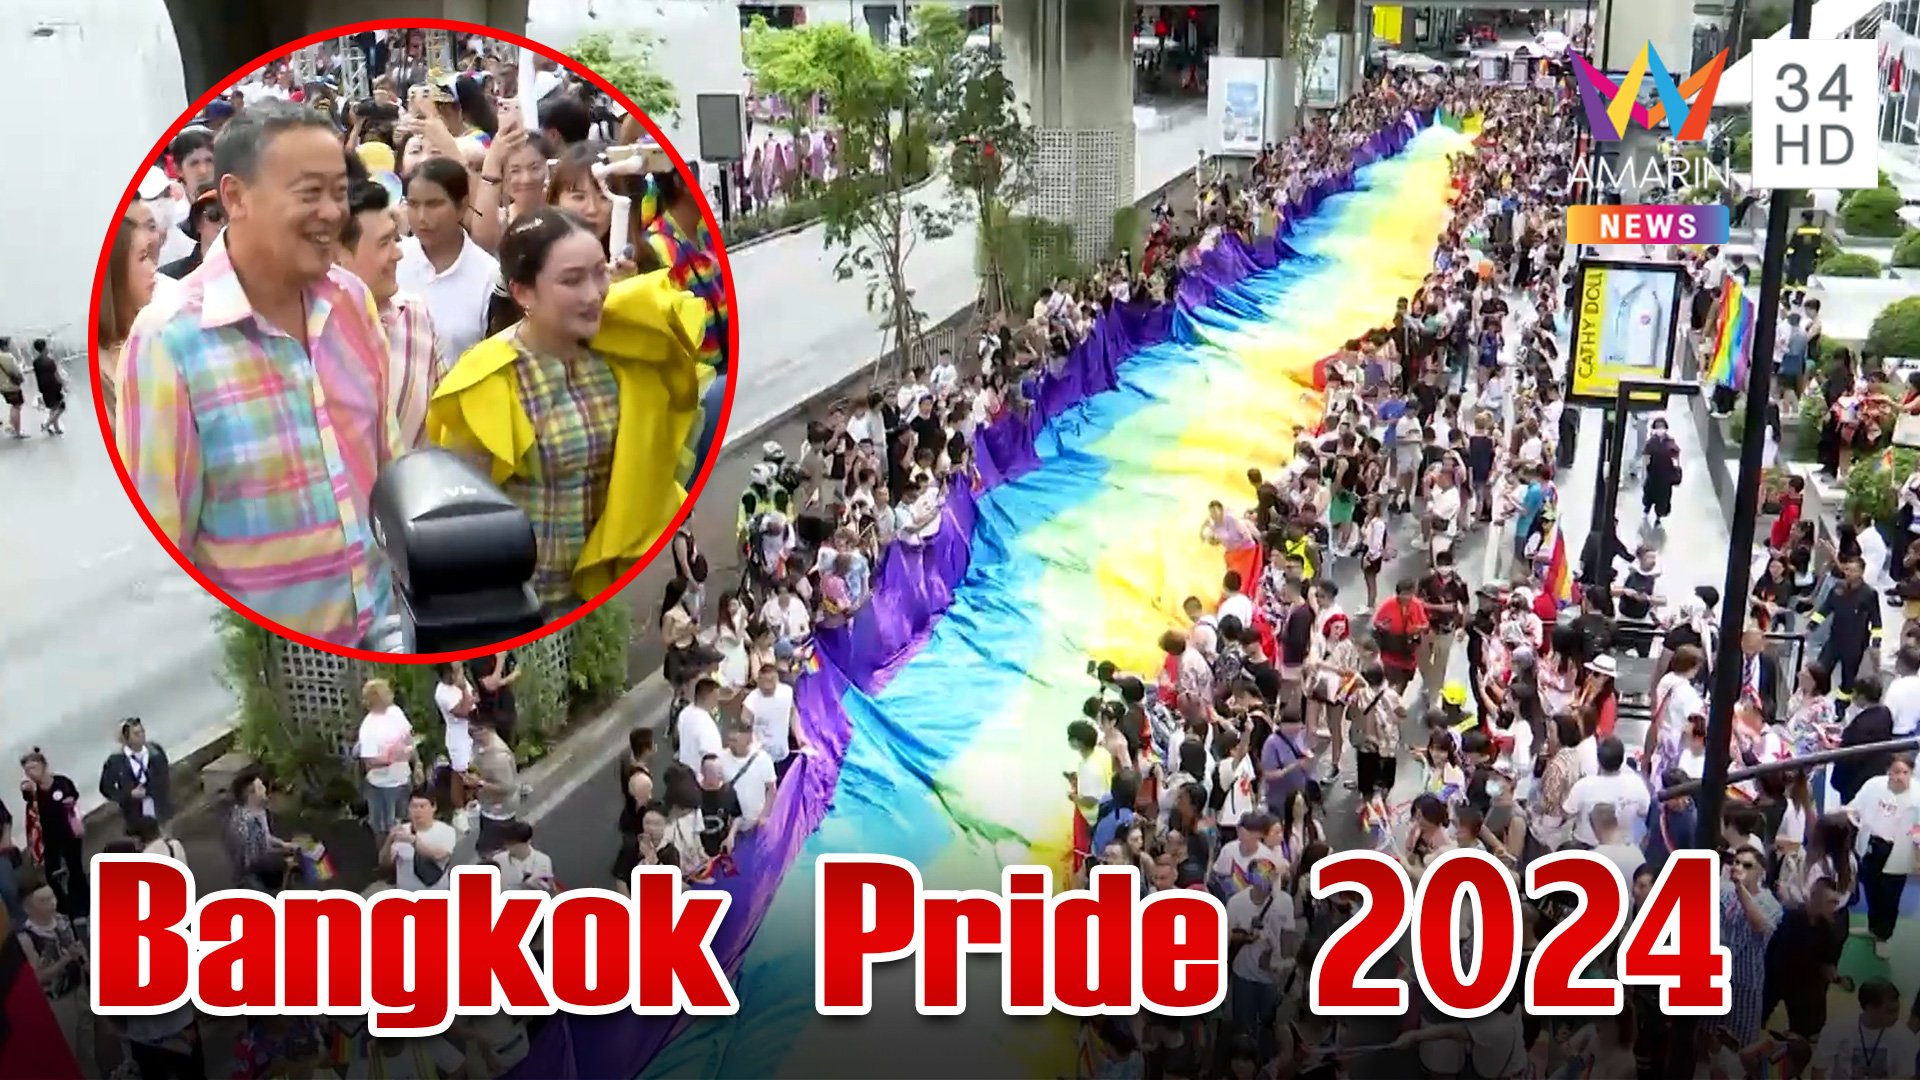 คาราวานร่วมฉลอง Bangkok Pride 2024  สุดยิ่งใหญ่ใจกลางกรุงเทพฯ | ทุบโต๊ะข่าว | 1 มิ.ย. 67 | AMARIN TVHD34